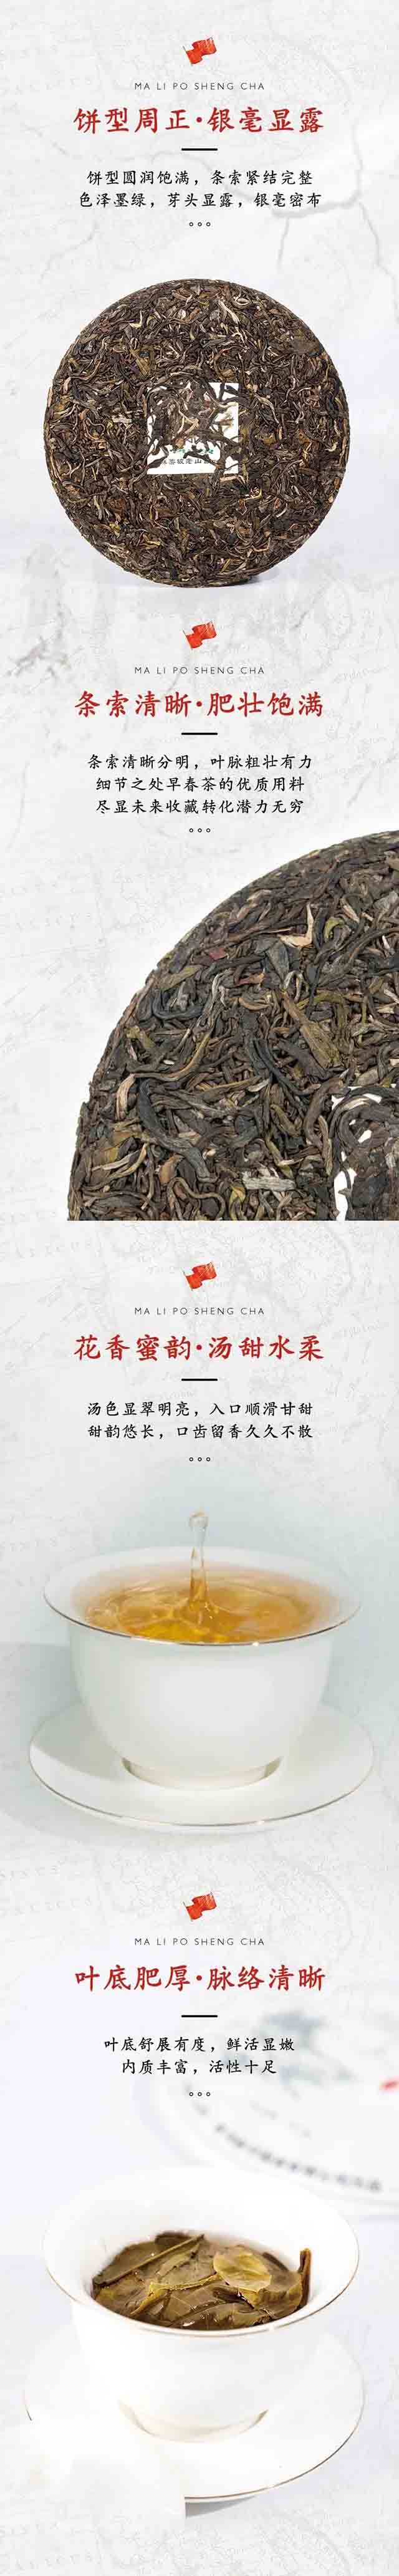 新华国茶麻栗坡老山古树茶